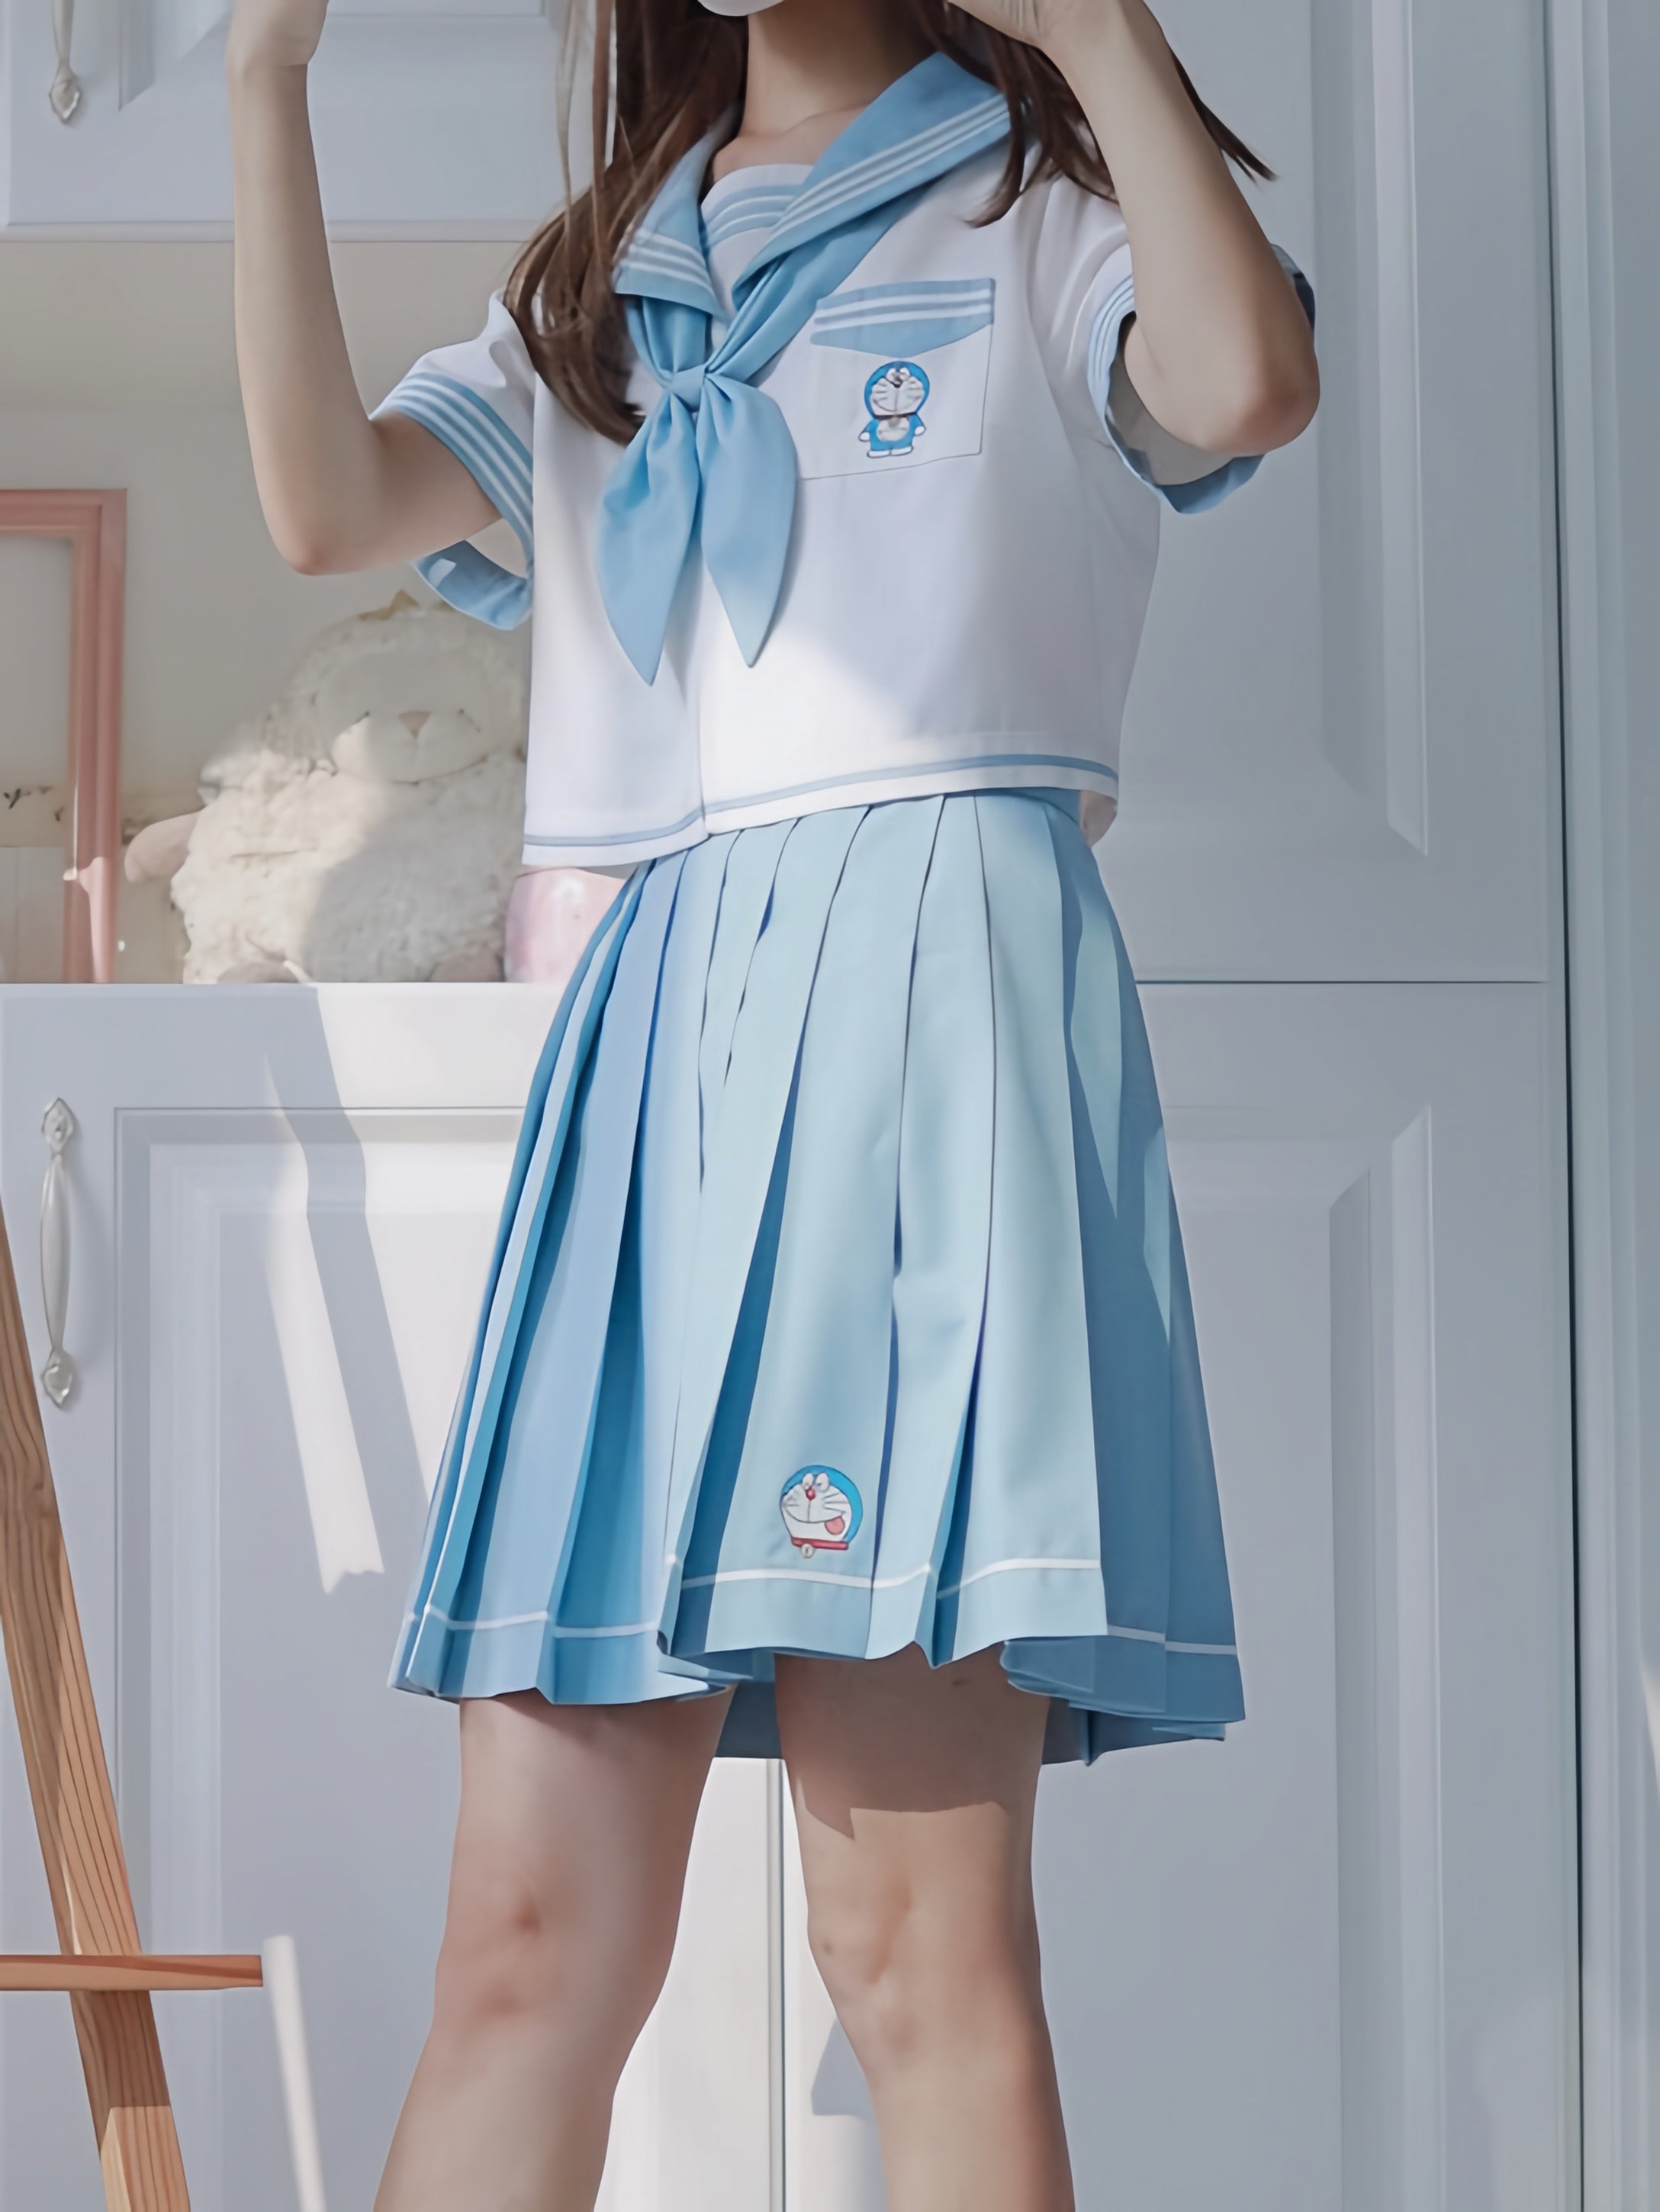 Doraemon JK Uniform Sailor Blouse & Skirt-ntbhshop